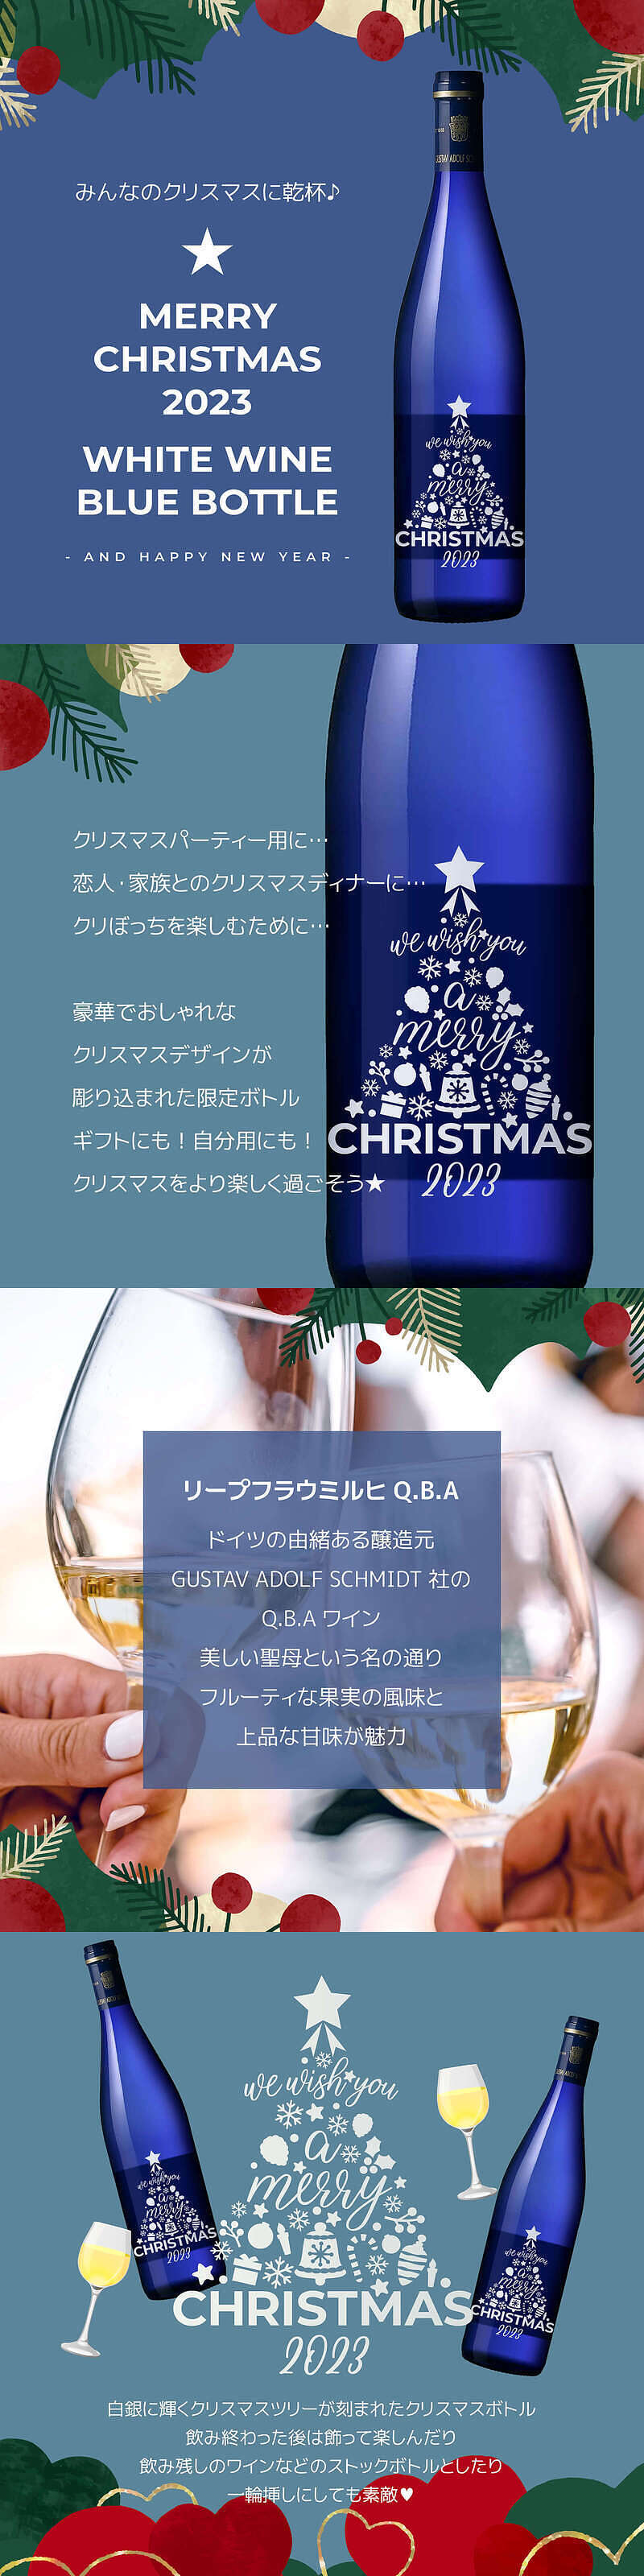 クリスマスツリー ブルーボトル 白ワインの説明